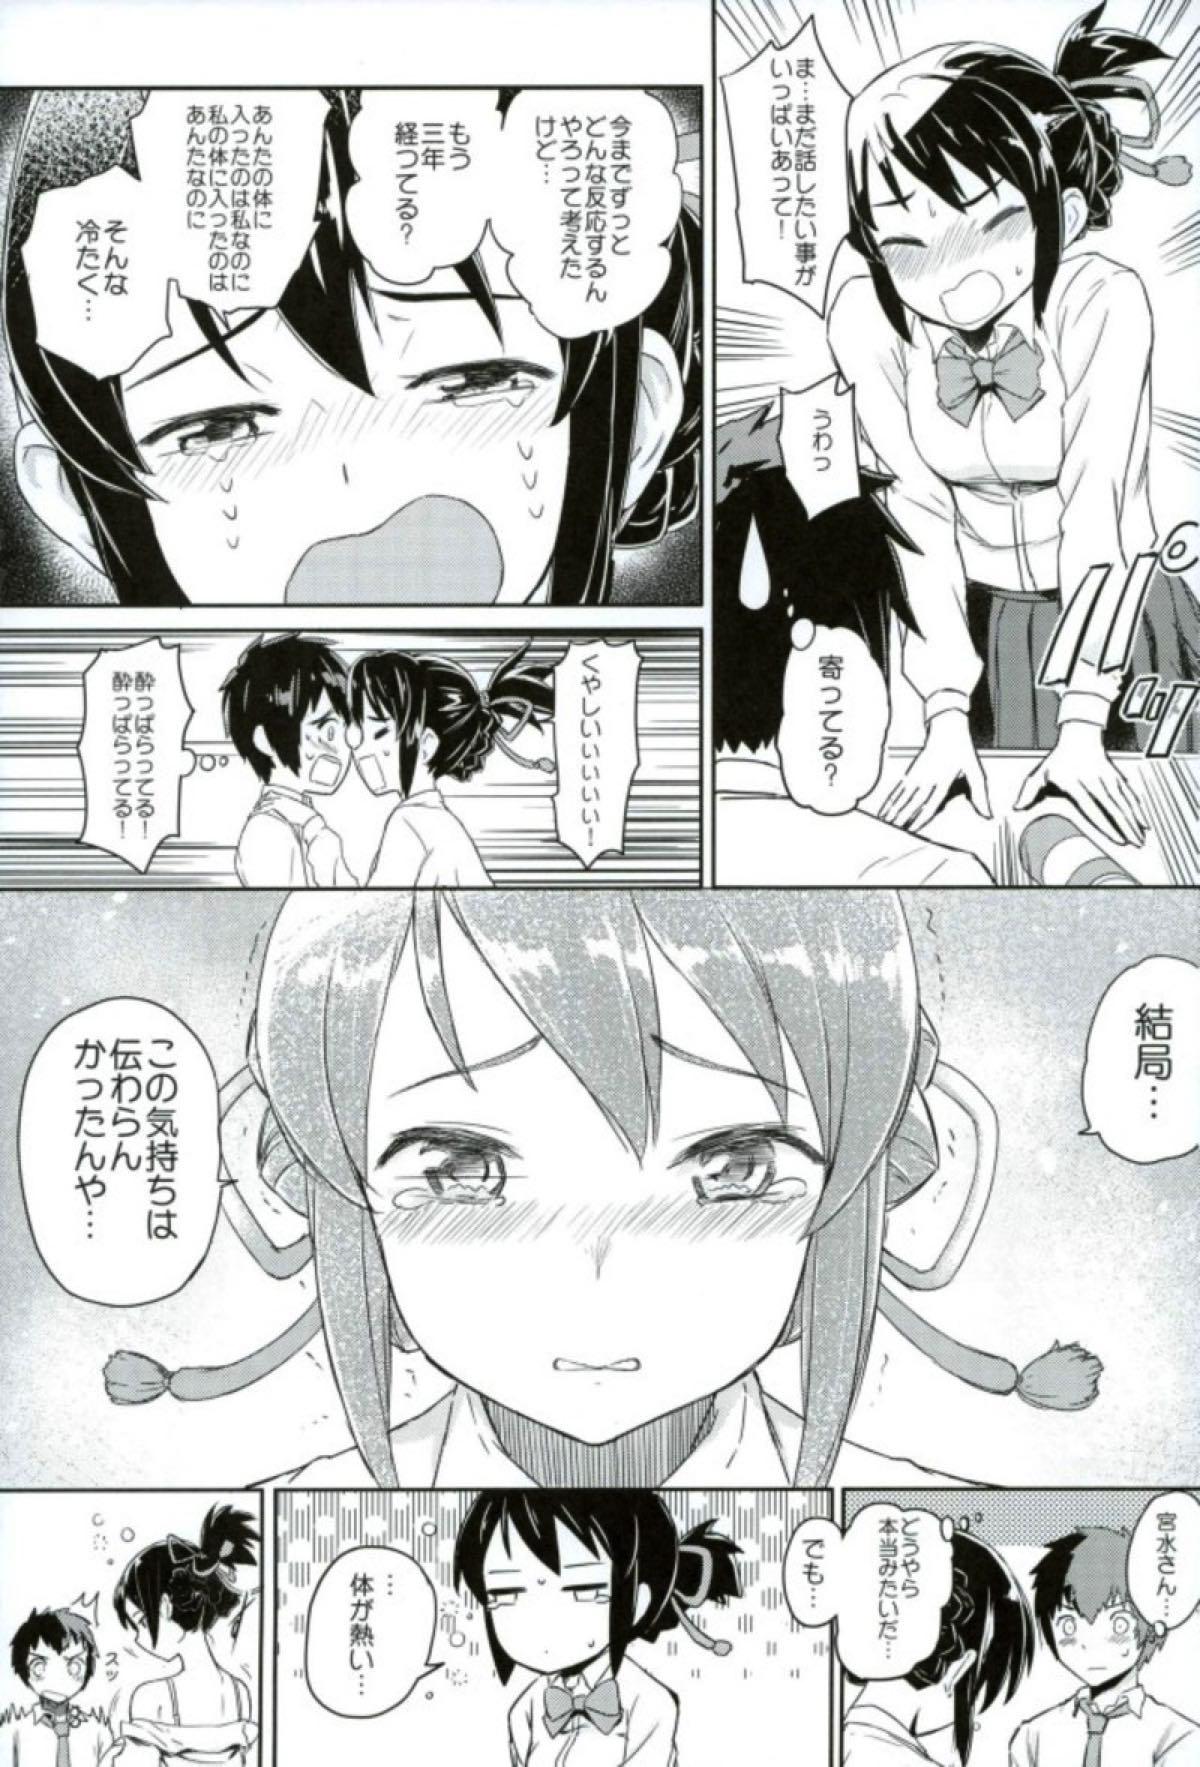 Cojiendo Kimi to Boku no Musubi - Kimi no na wa. Bottom - Page 4